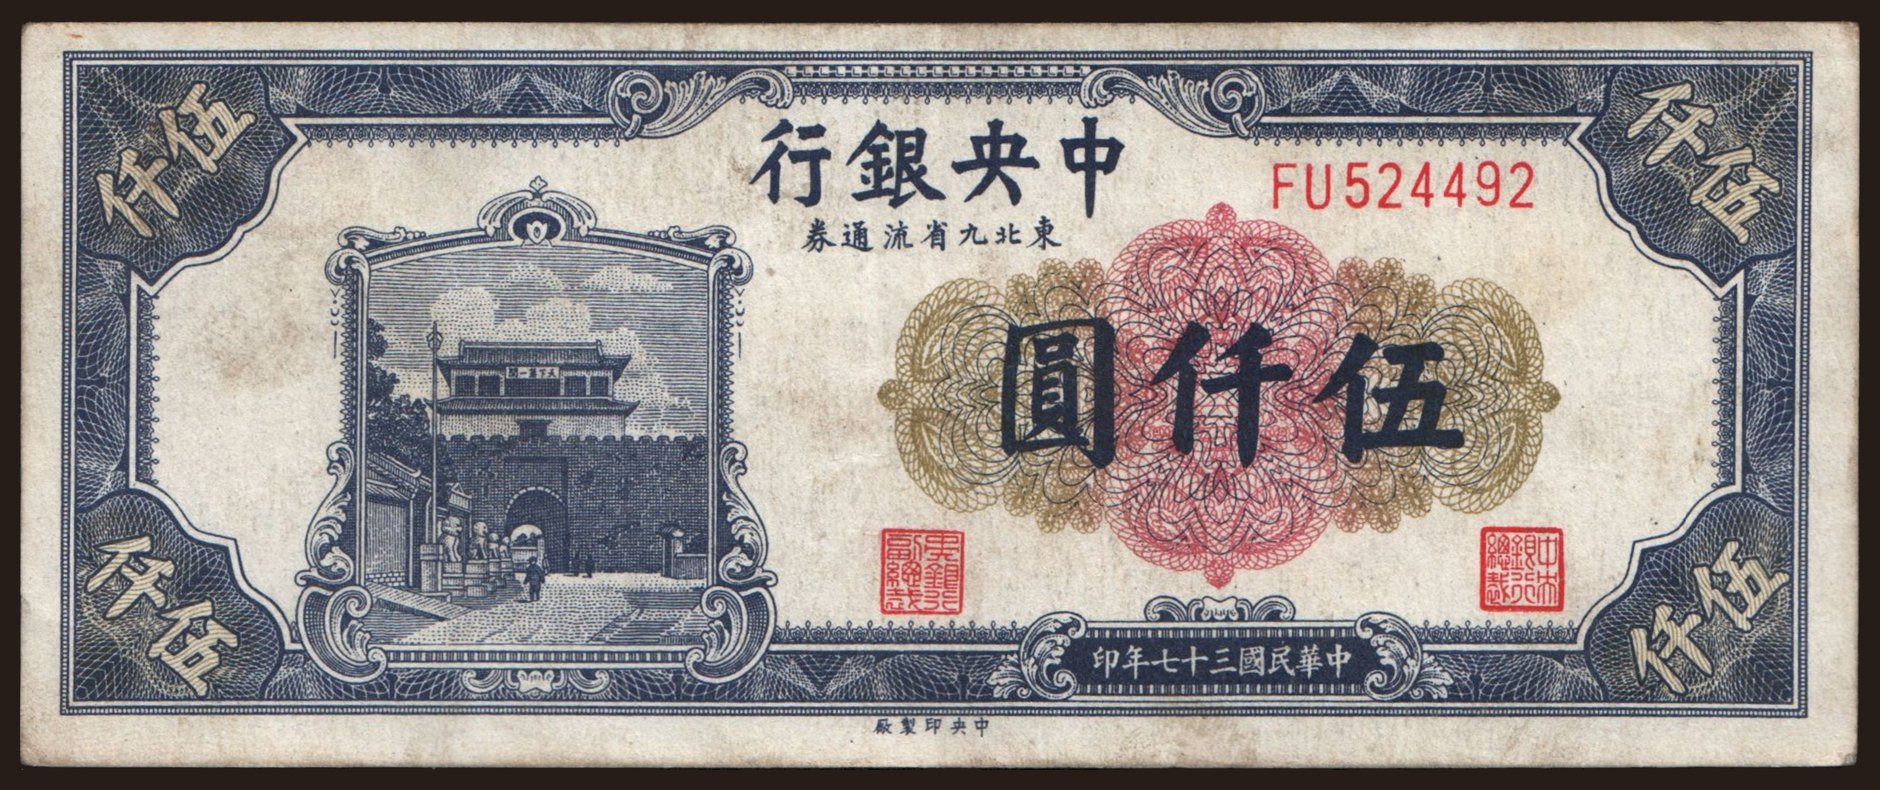 Central Bank of China, 5000 yuan, 1948